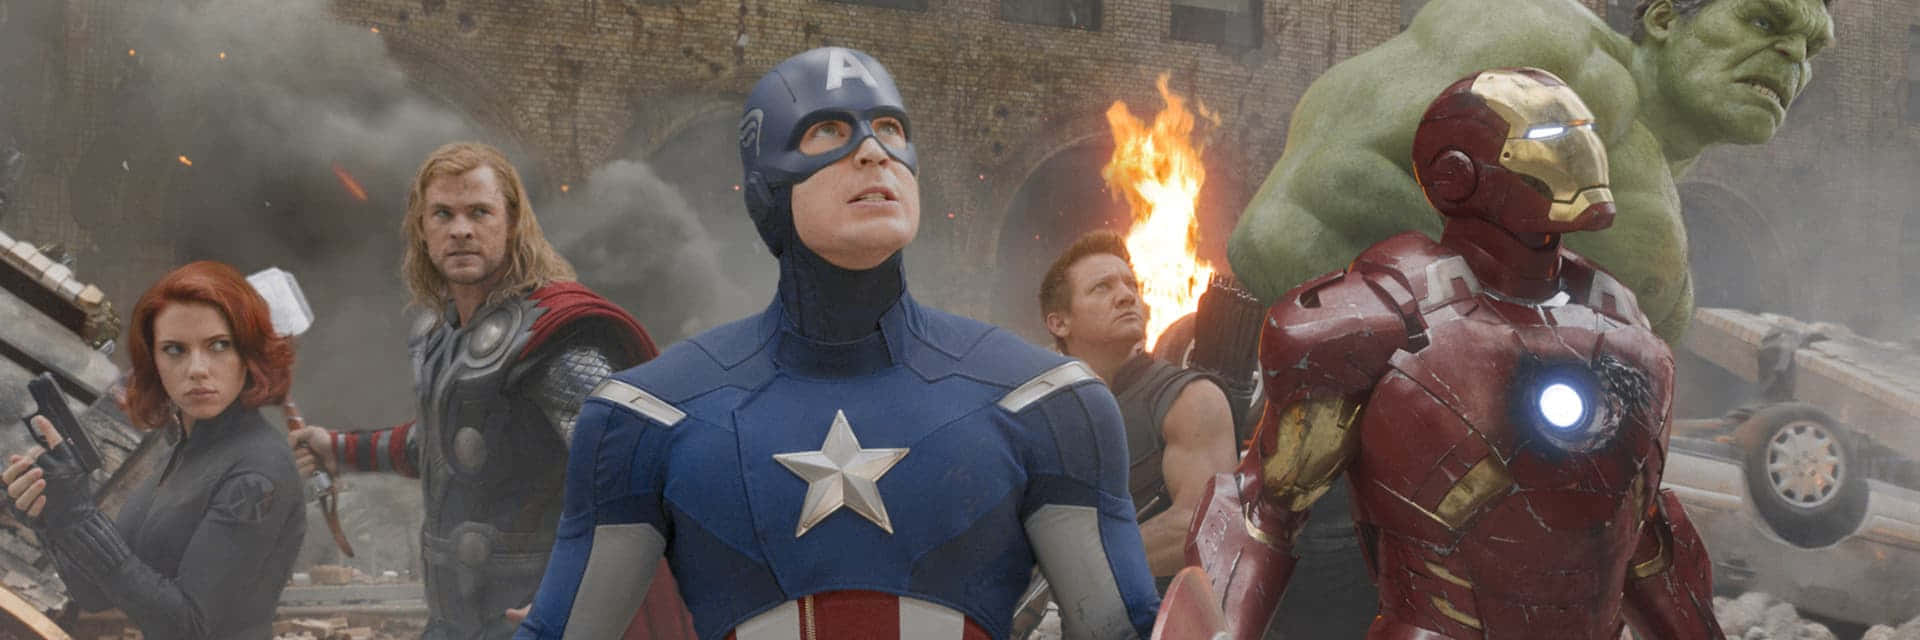 En hold af Avengers sammenslutter kræfter og samarbejder for at redde verden.